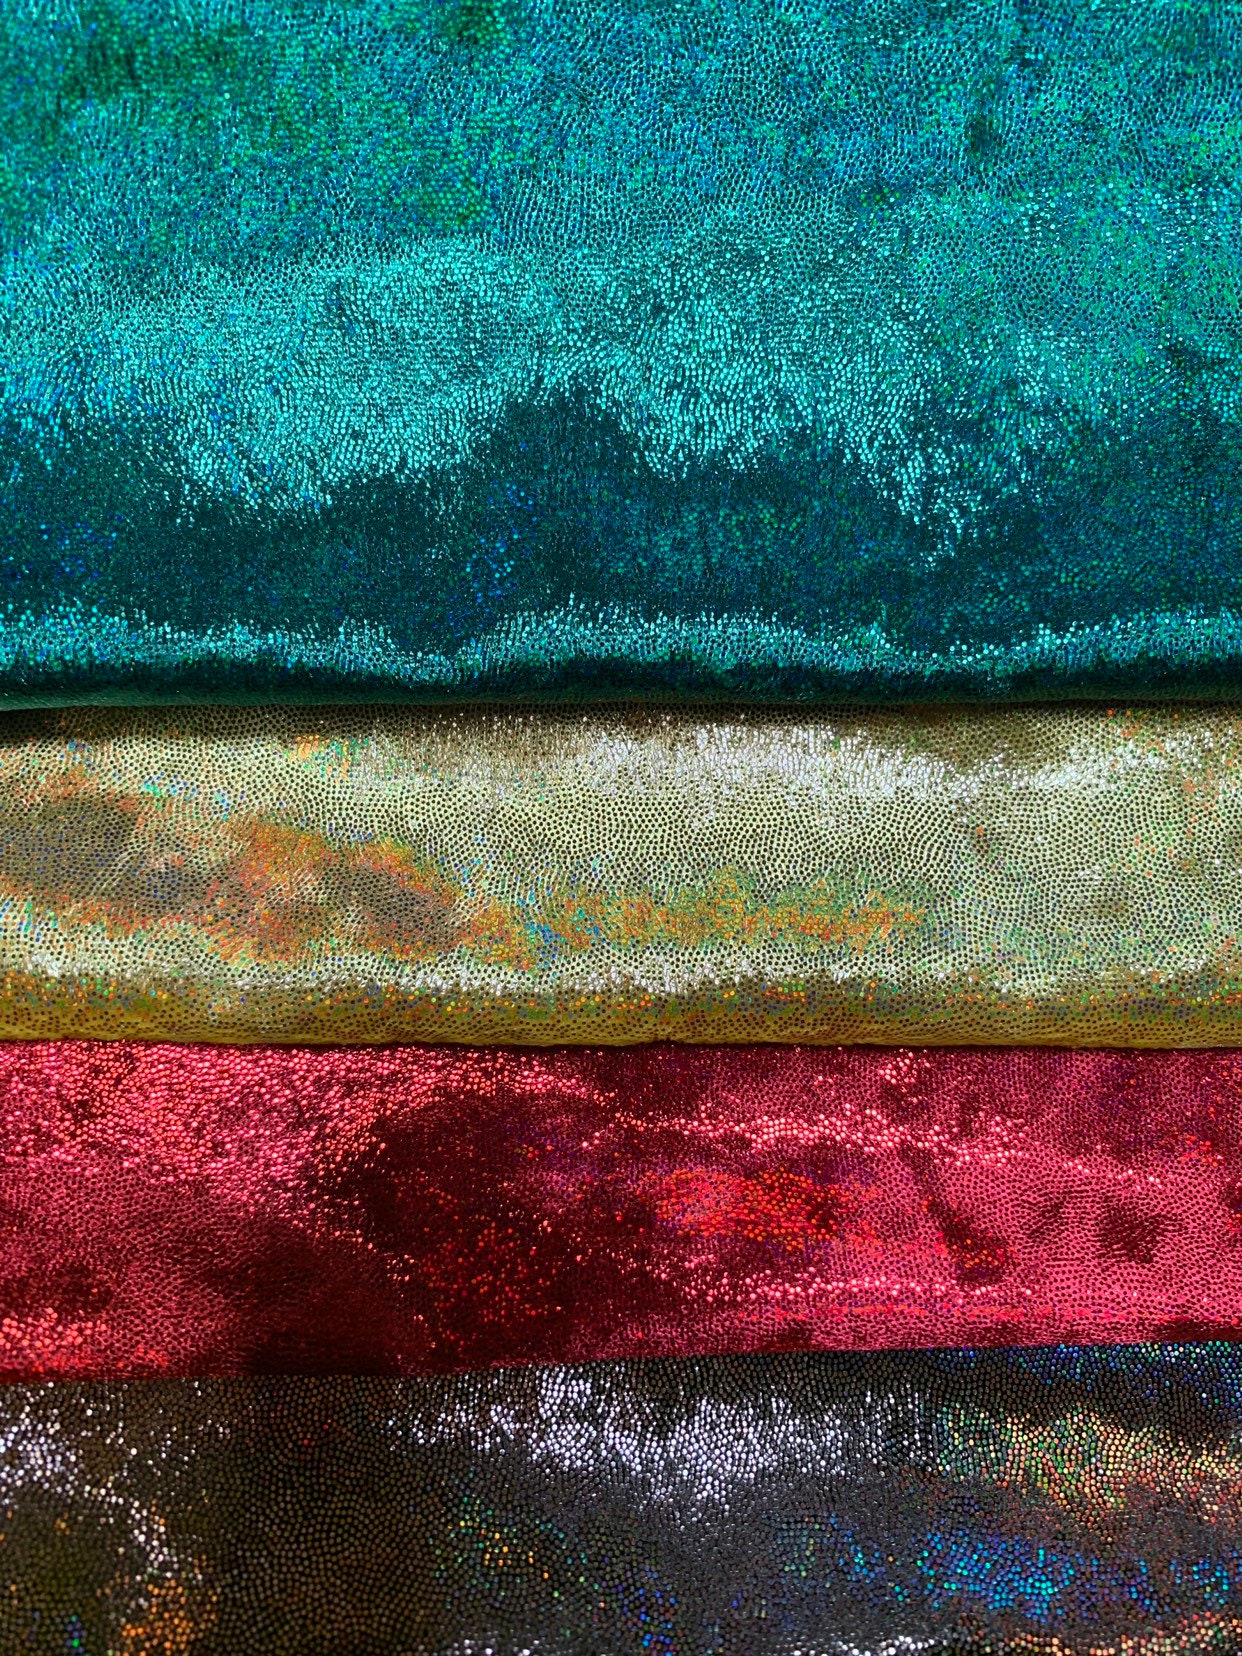 Iridescent Foggy Foil Fabric - Oil Slick 58/60 Stretch Foil Velvet Fa